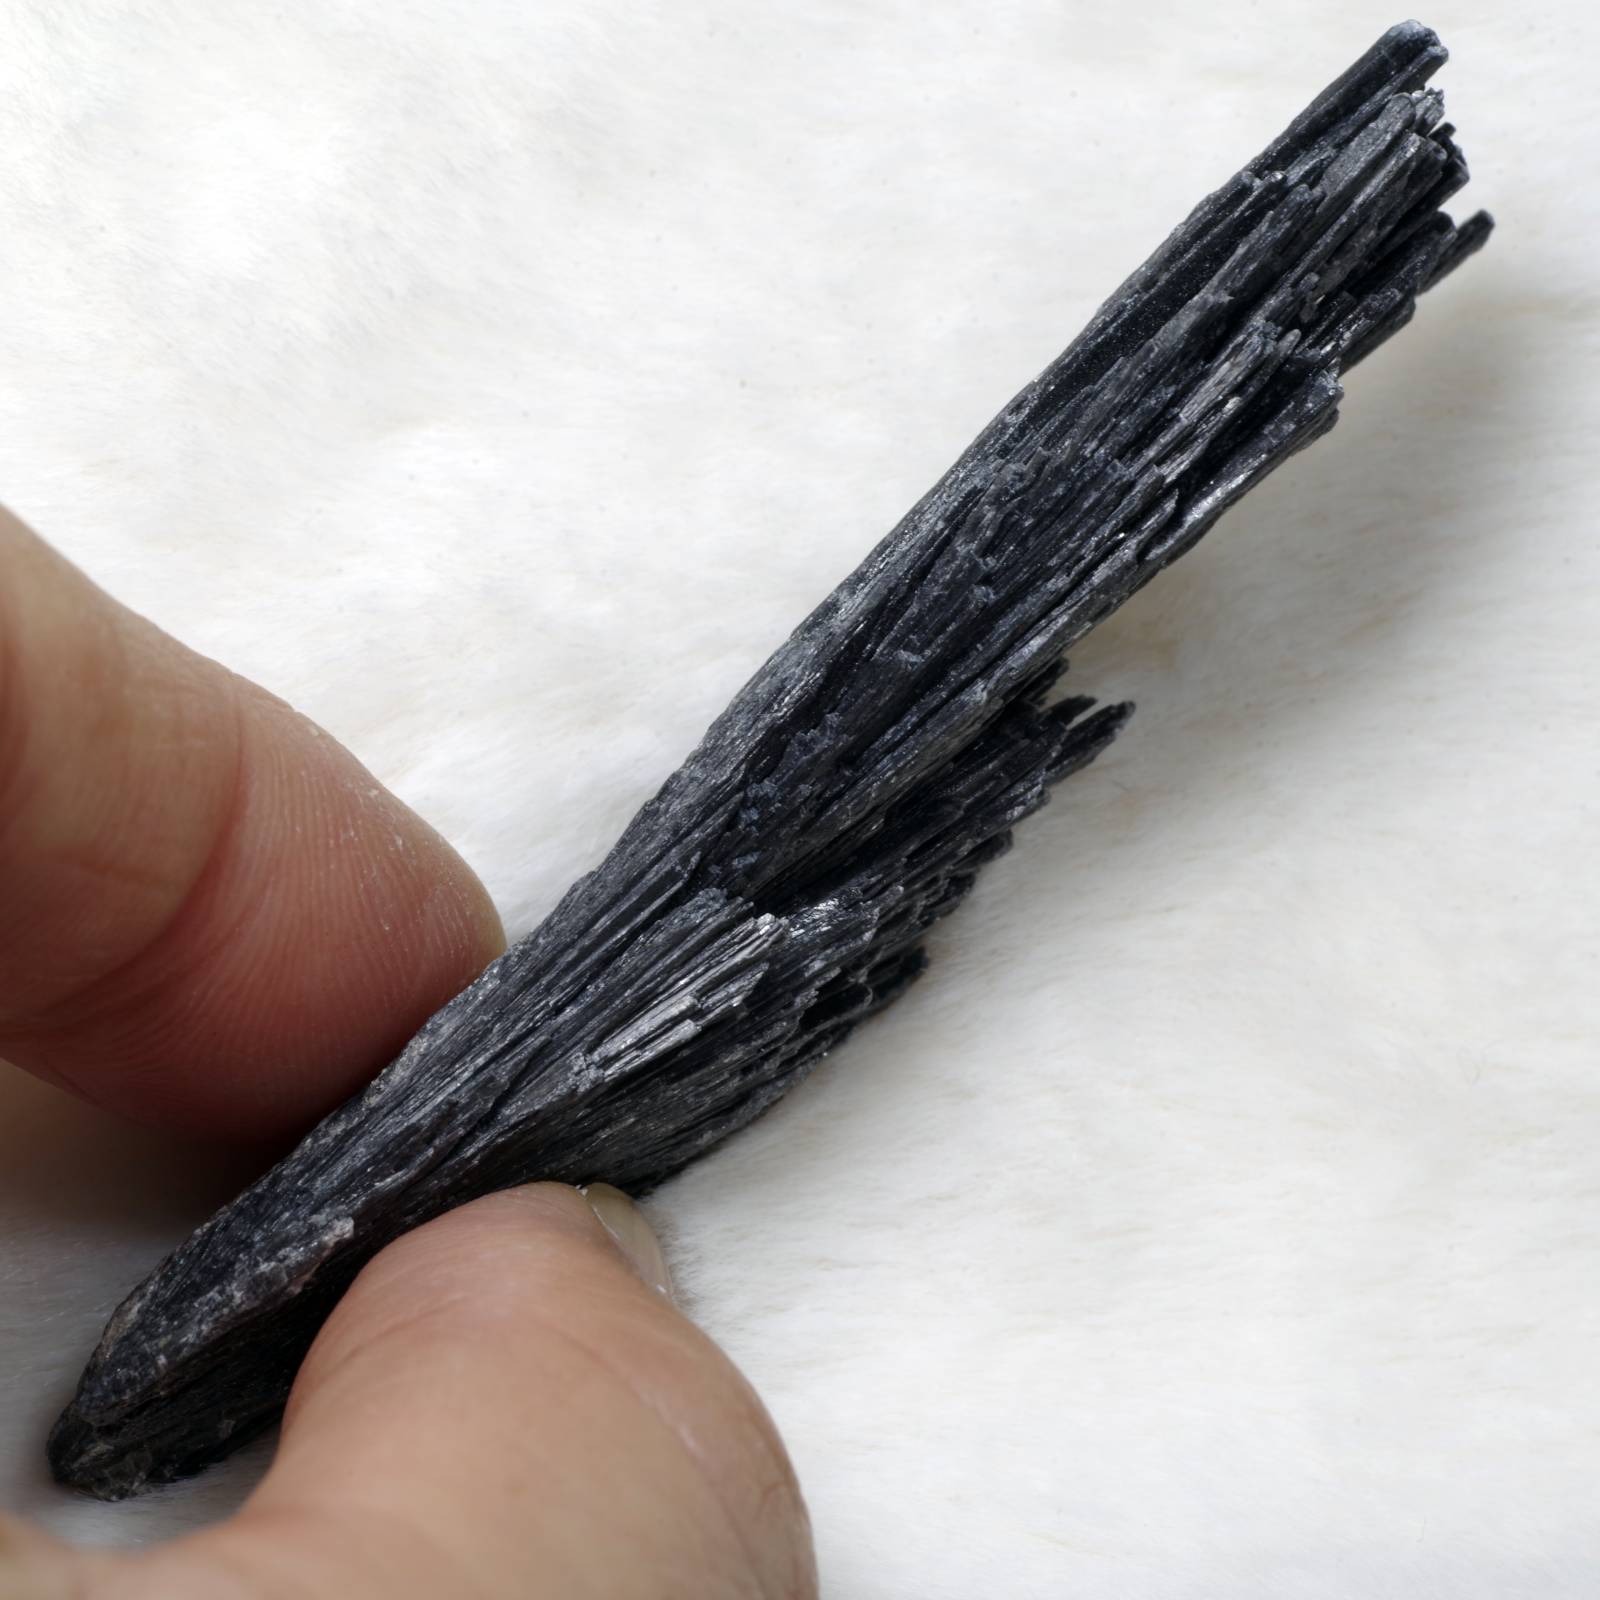 カイヤナイト 藍晶石 黒 ブラジル産3 Black Kyanite Brazil 原石 写真現物 動画あり – TENDER TIME